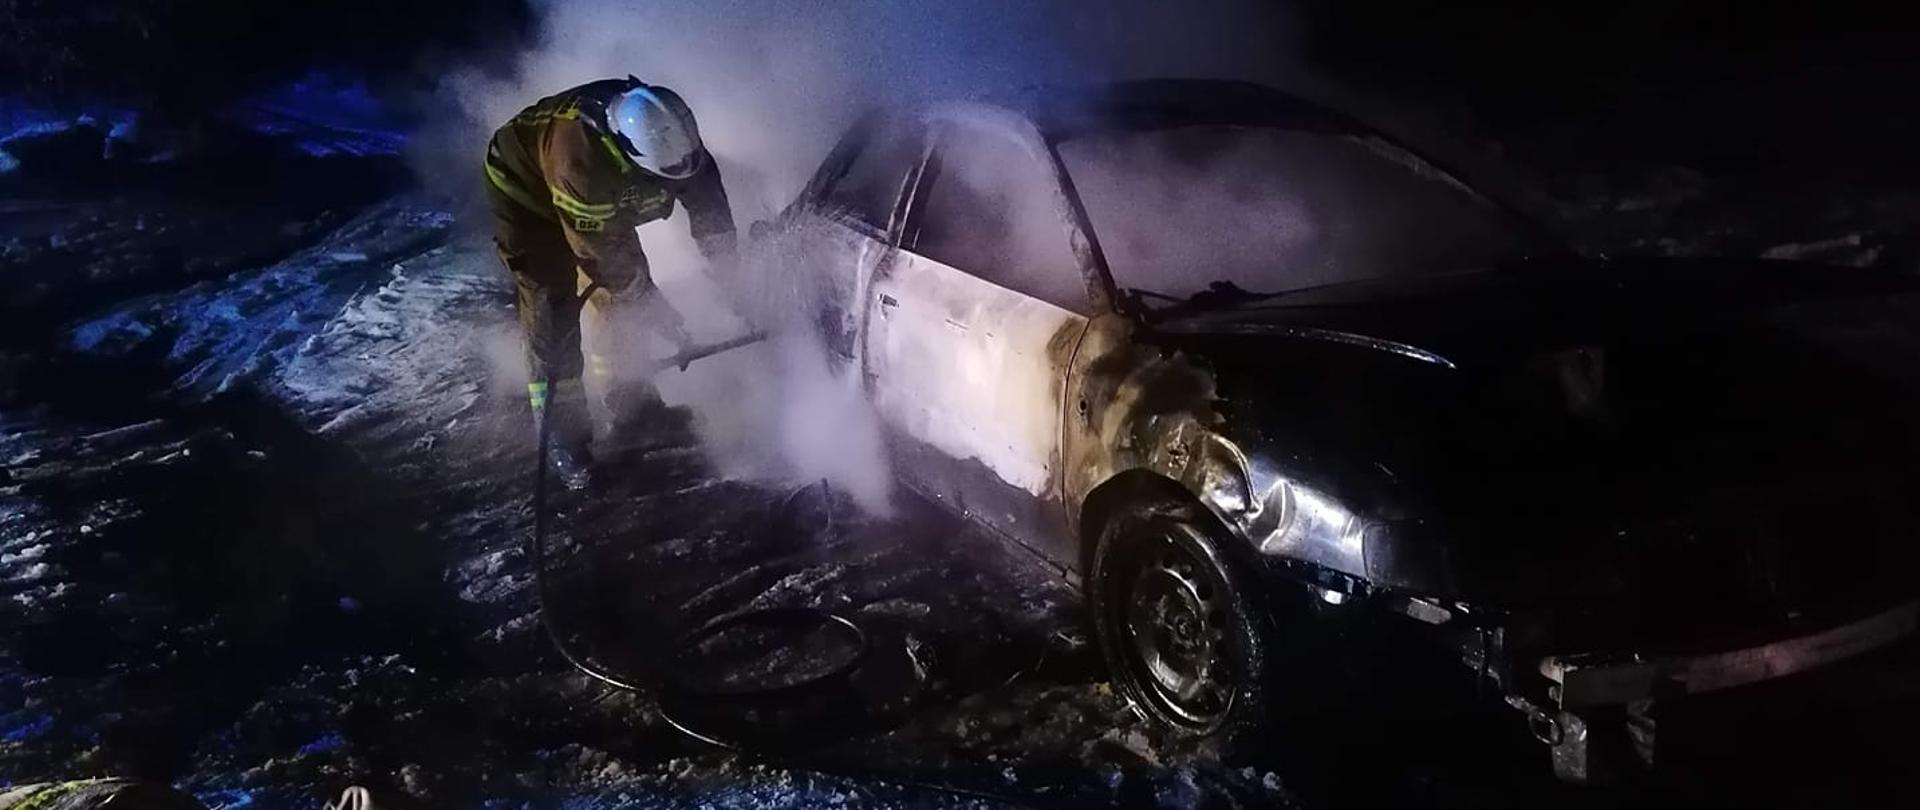 Samochód osobowy po pożarze, obok gaszący za pomocą szybkiego natarcia pożar strażak z OSP Mosty. 